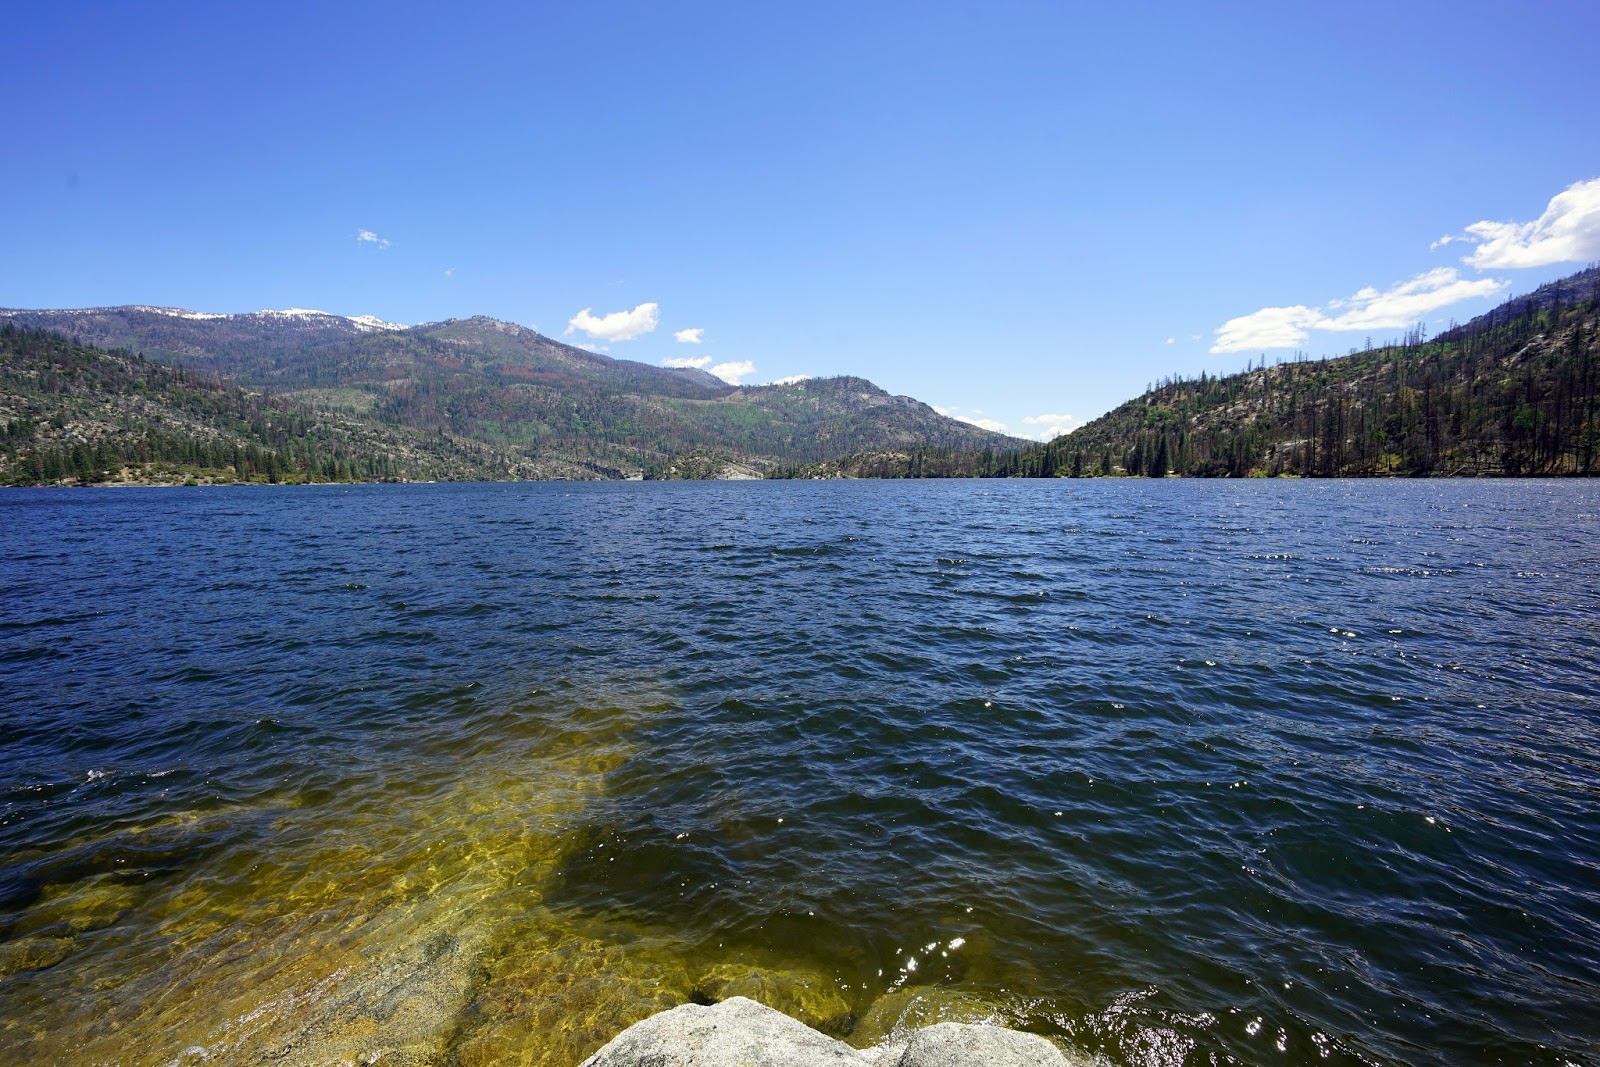 Mid Sierra Musings: Mile High Overlook and Mammoth Pool Reservoir